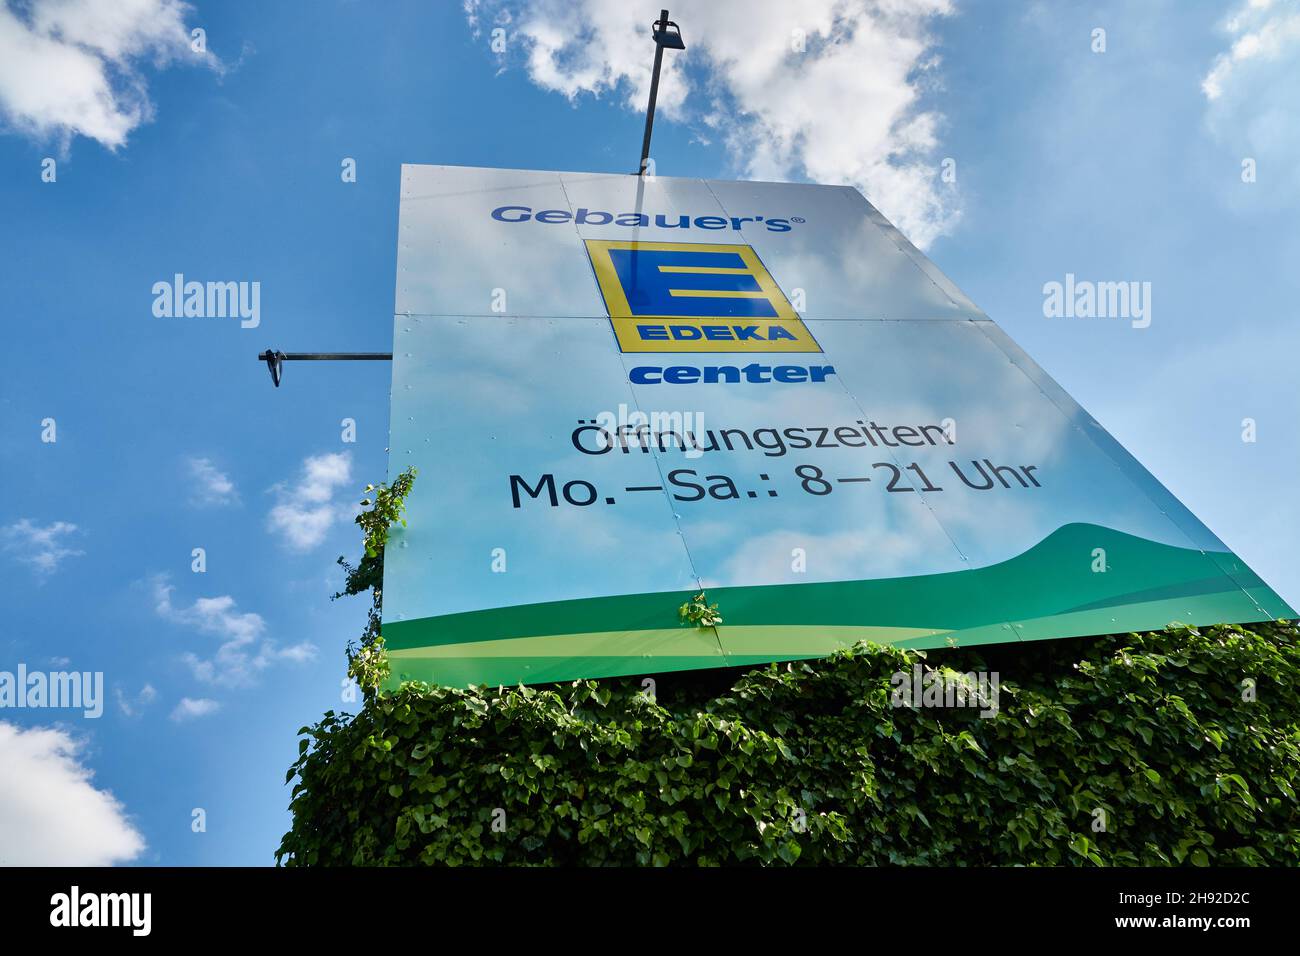 Göppingen, Allemagne - 21 mai 2020 : panneau d'affichage Edeka, sur une base verte avec ciel bleu et nuages.Goeppingen. Banque D'Images